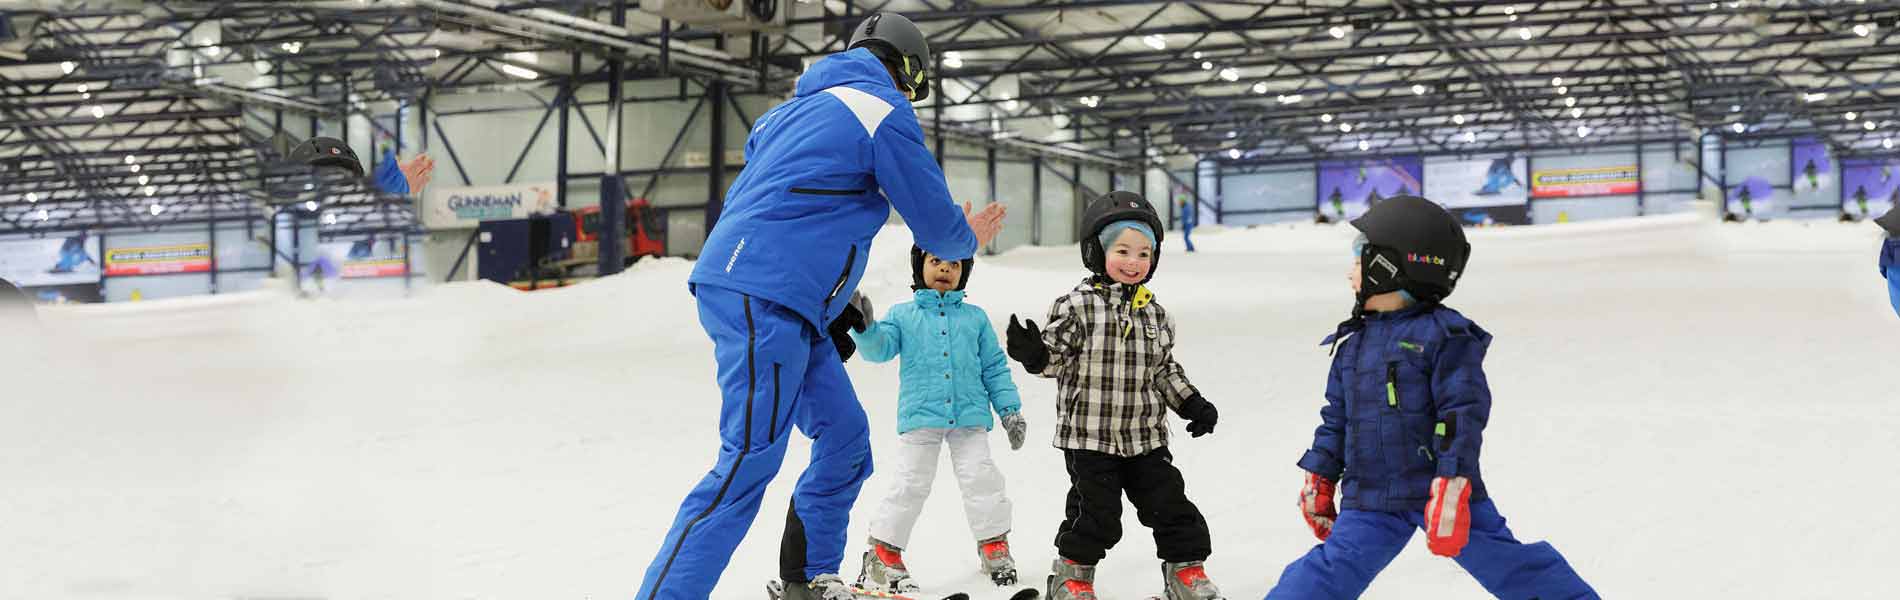 Ski lessons children eindhoven valkenswaard